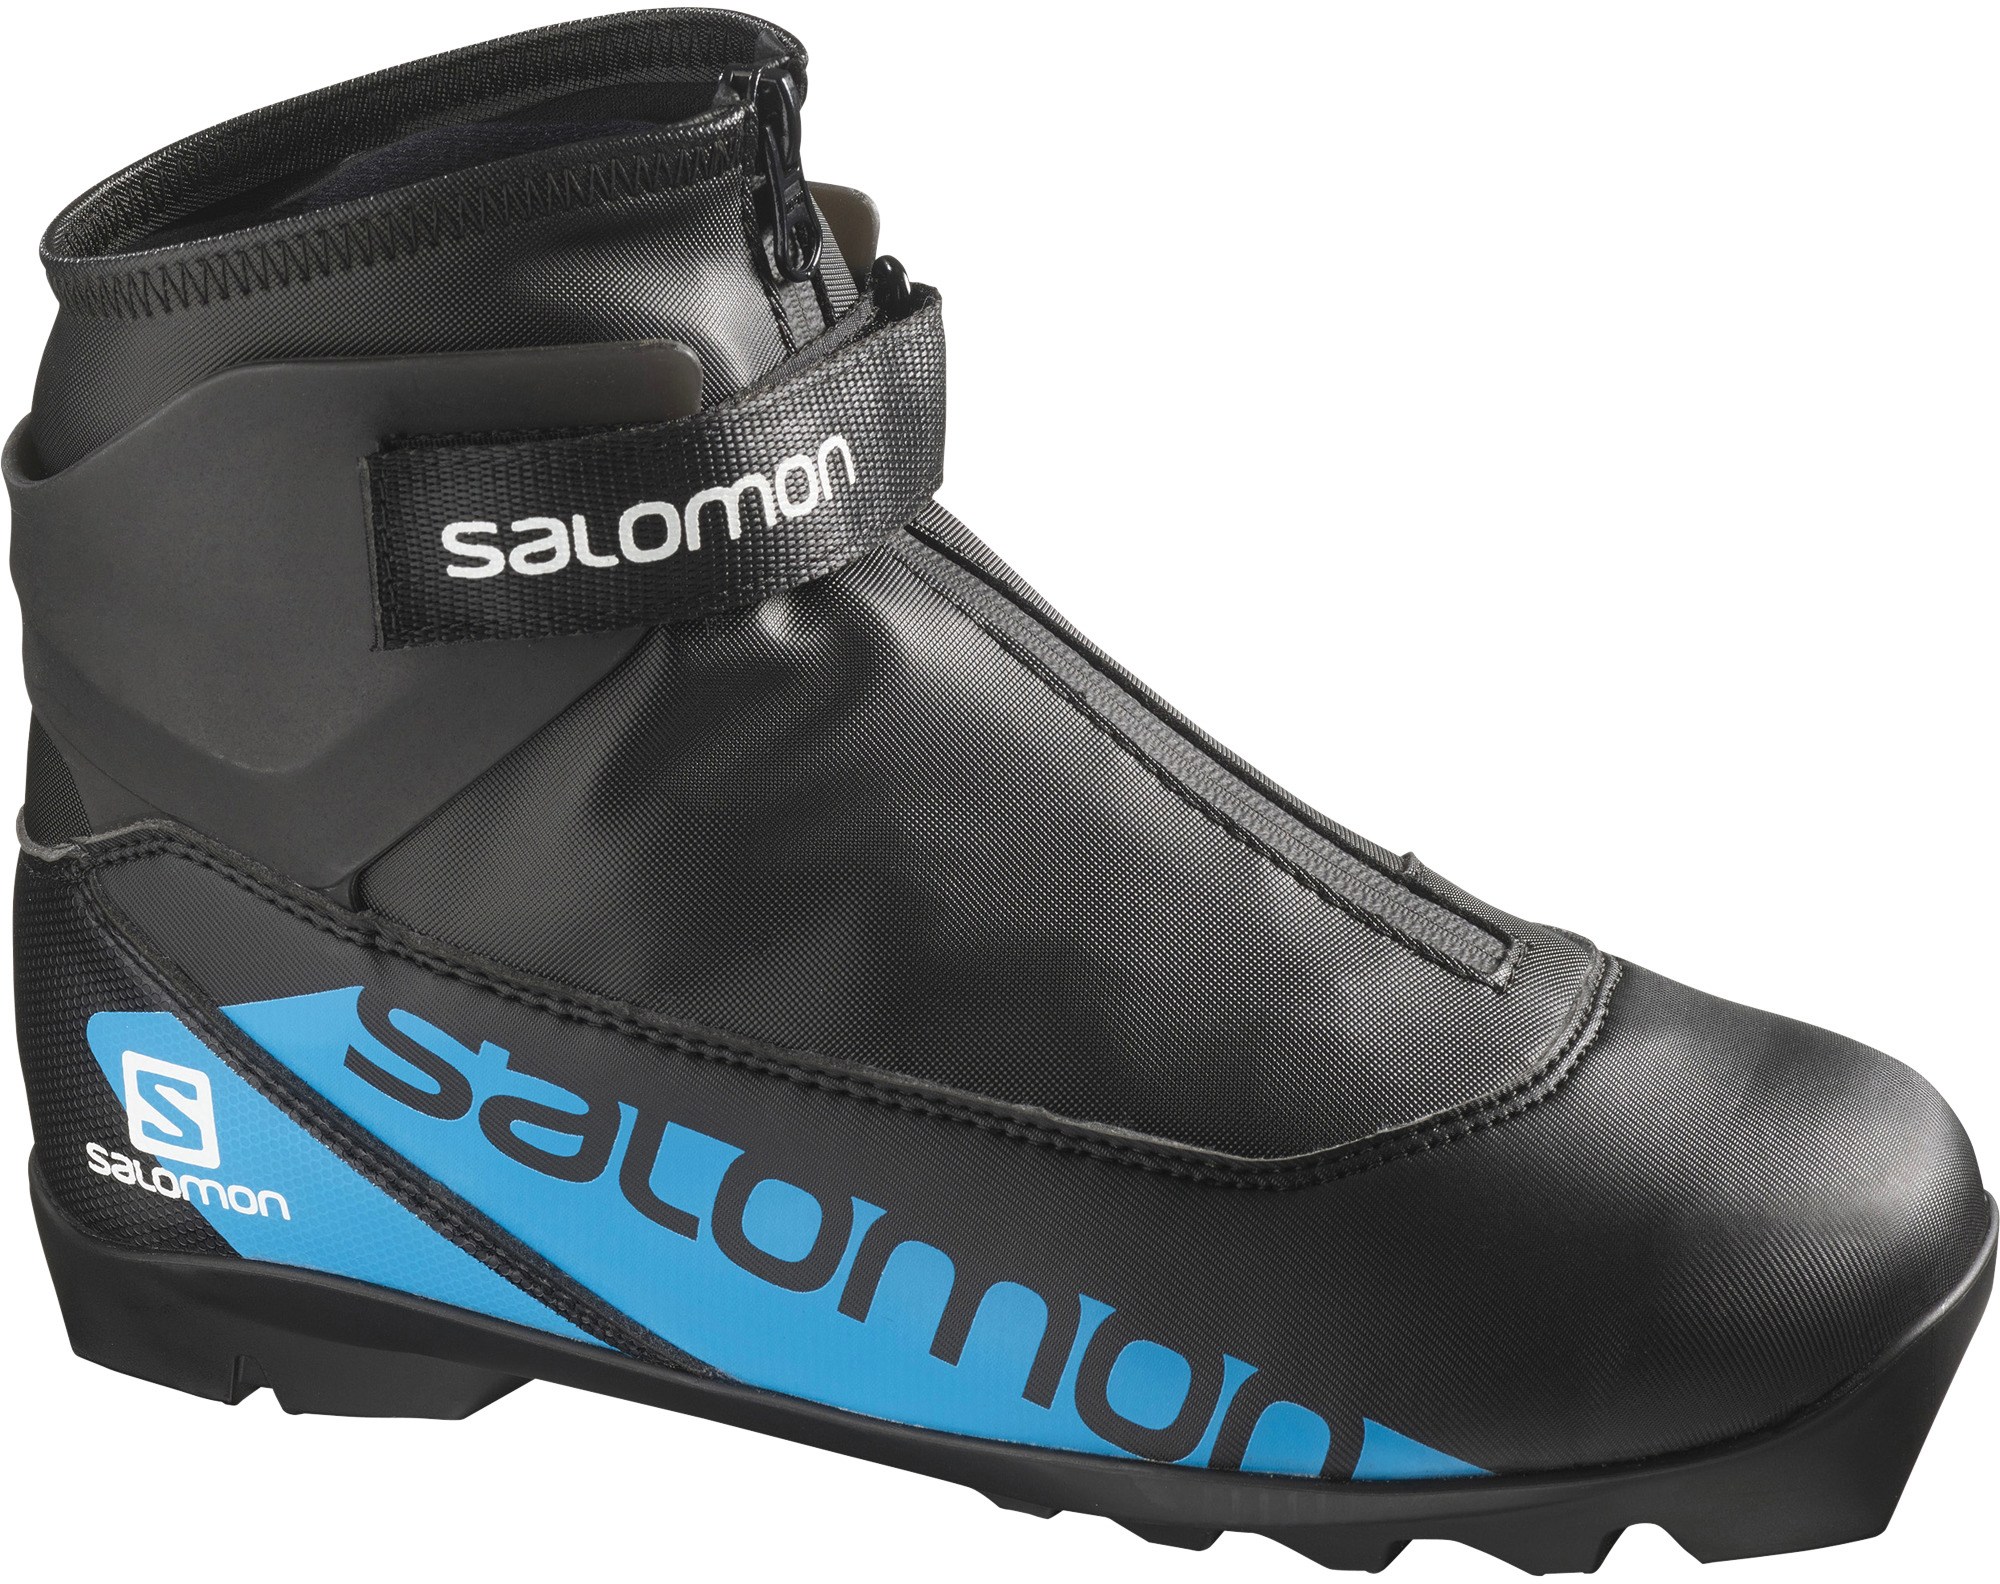 Ботинки для беговых лыж R/Combi — детские Salomon, черный